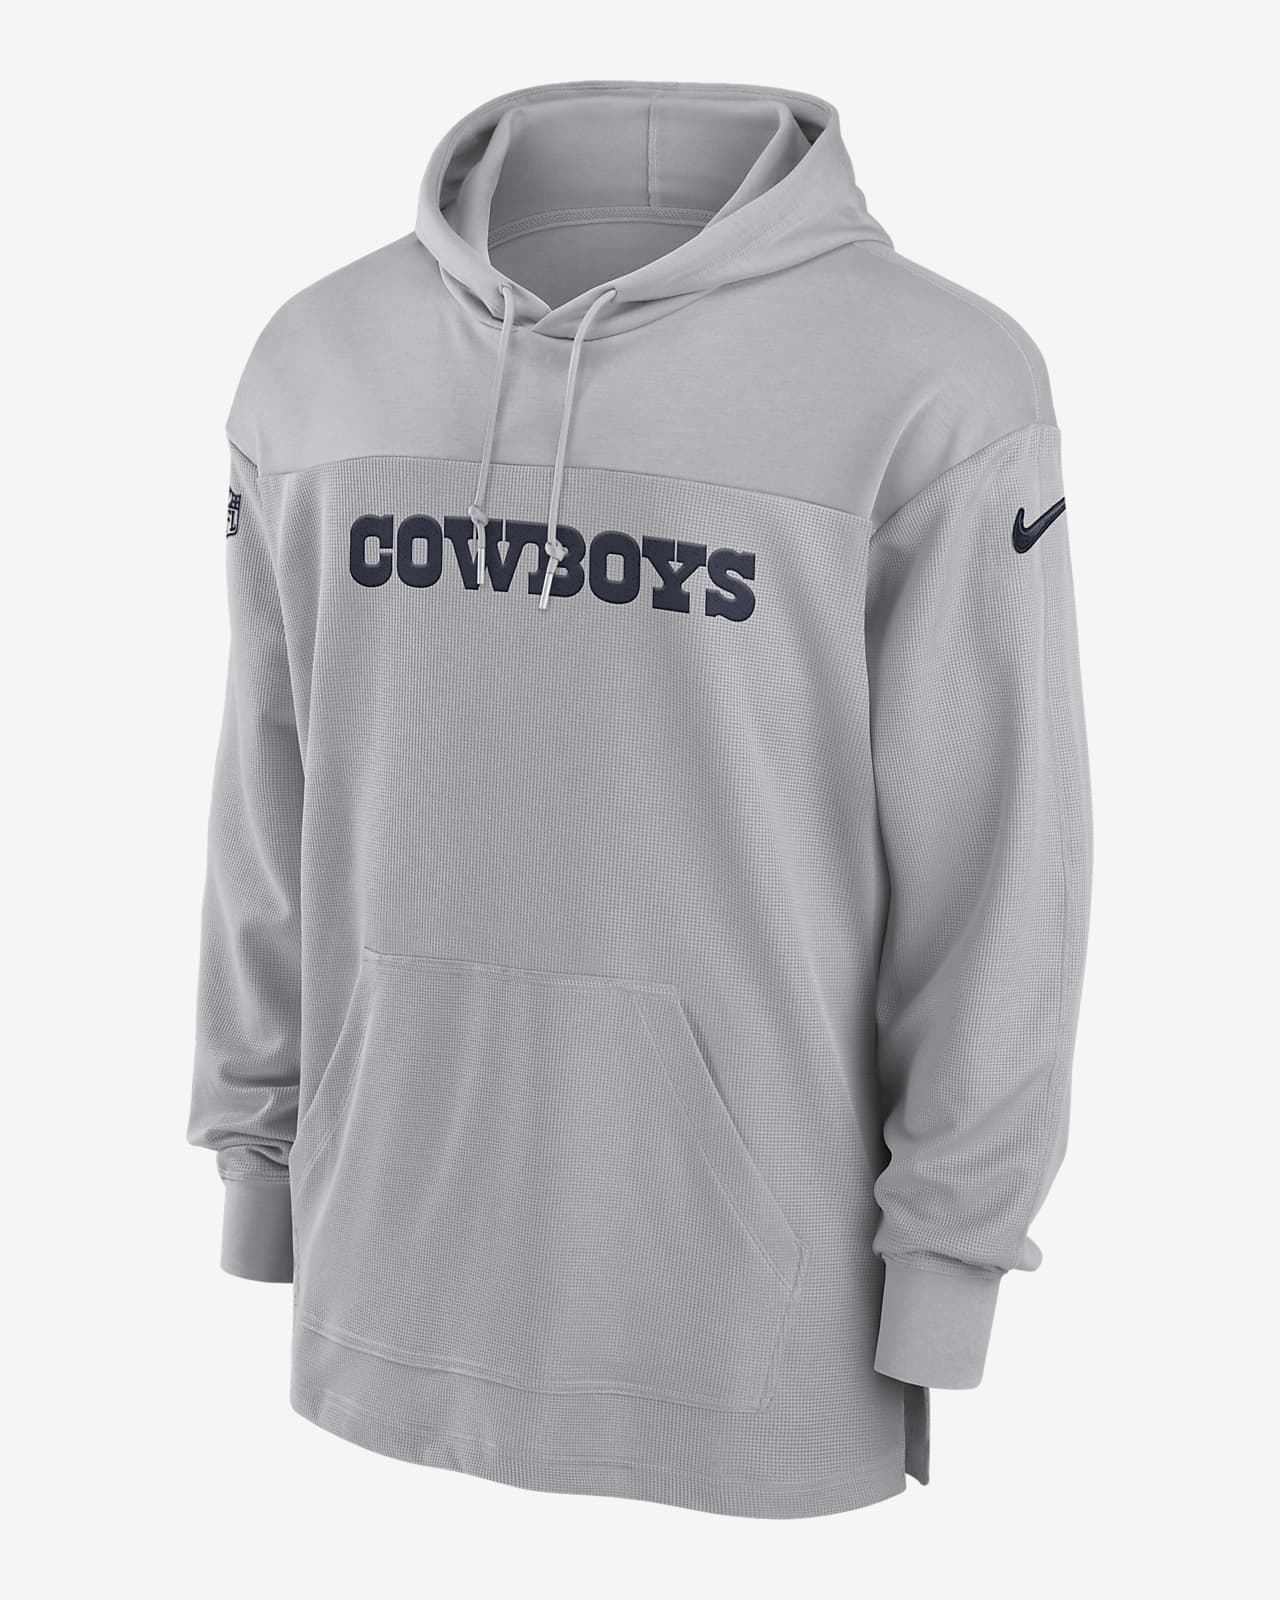 cowboys sideline hoodie